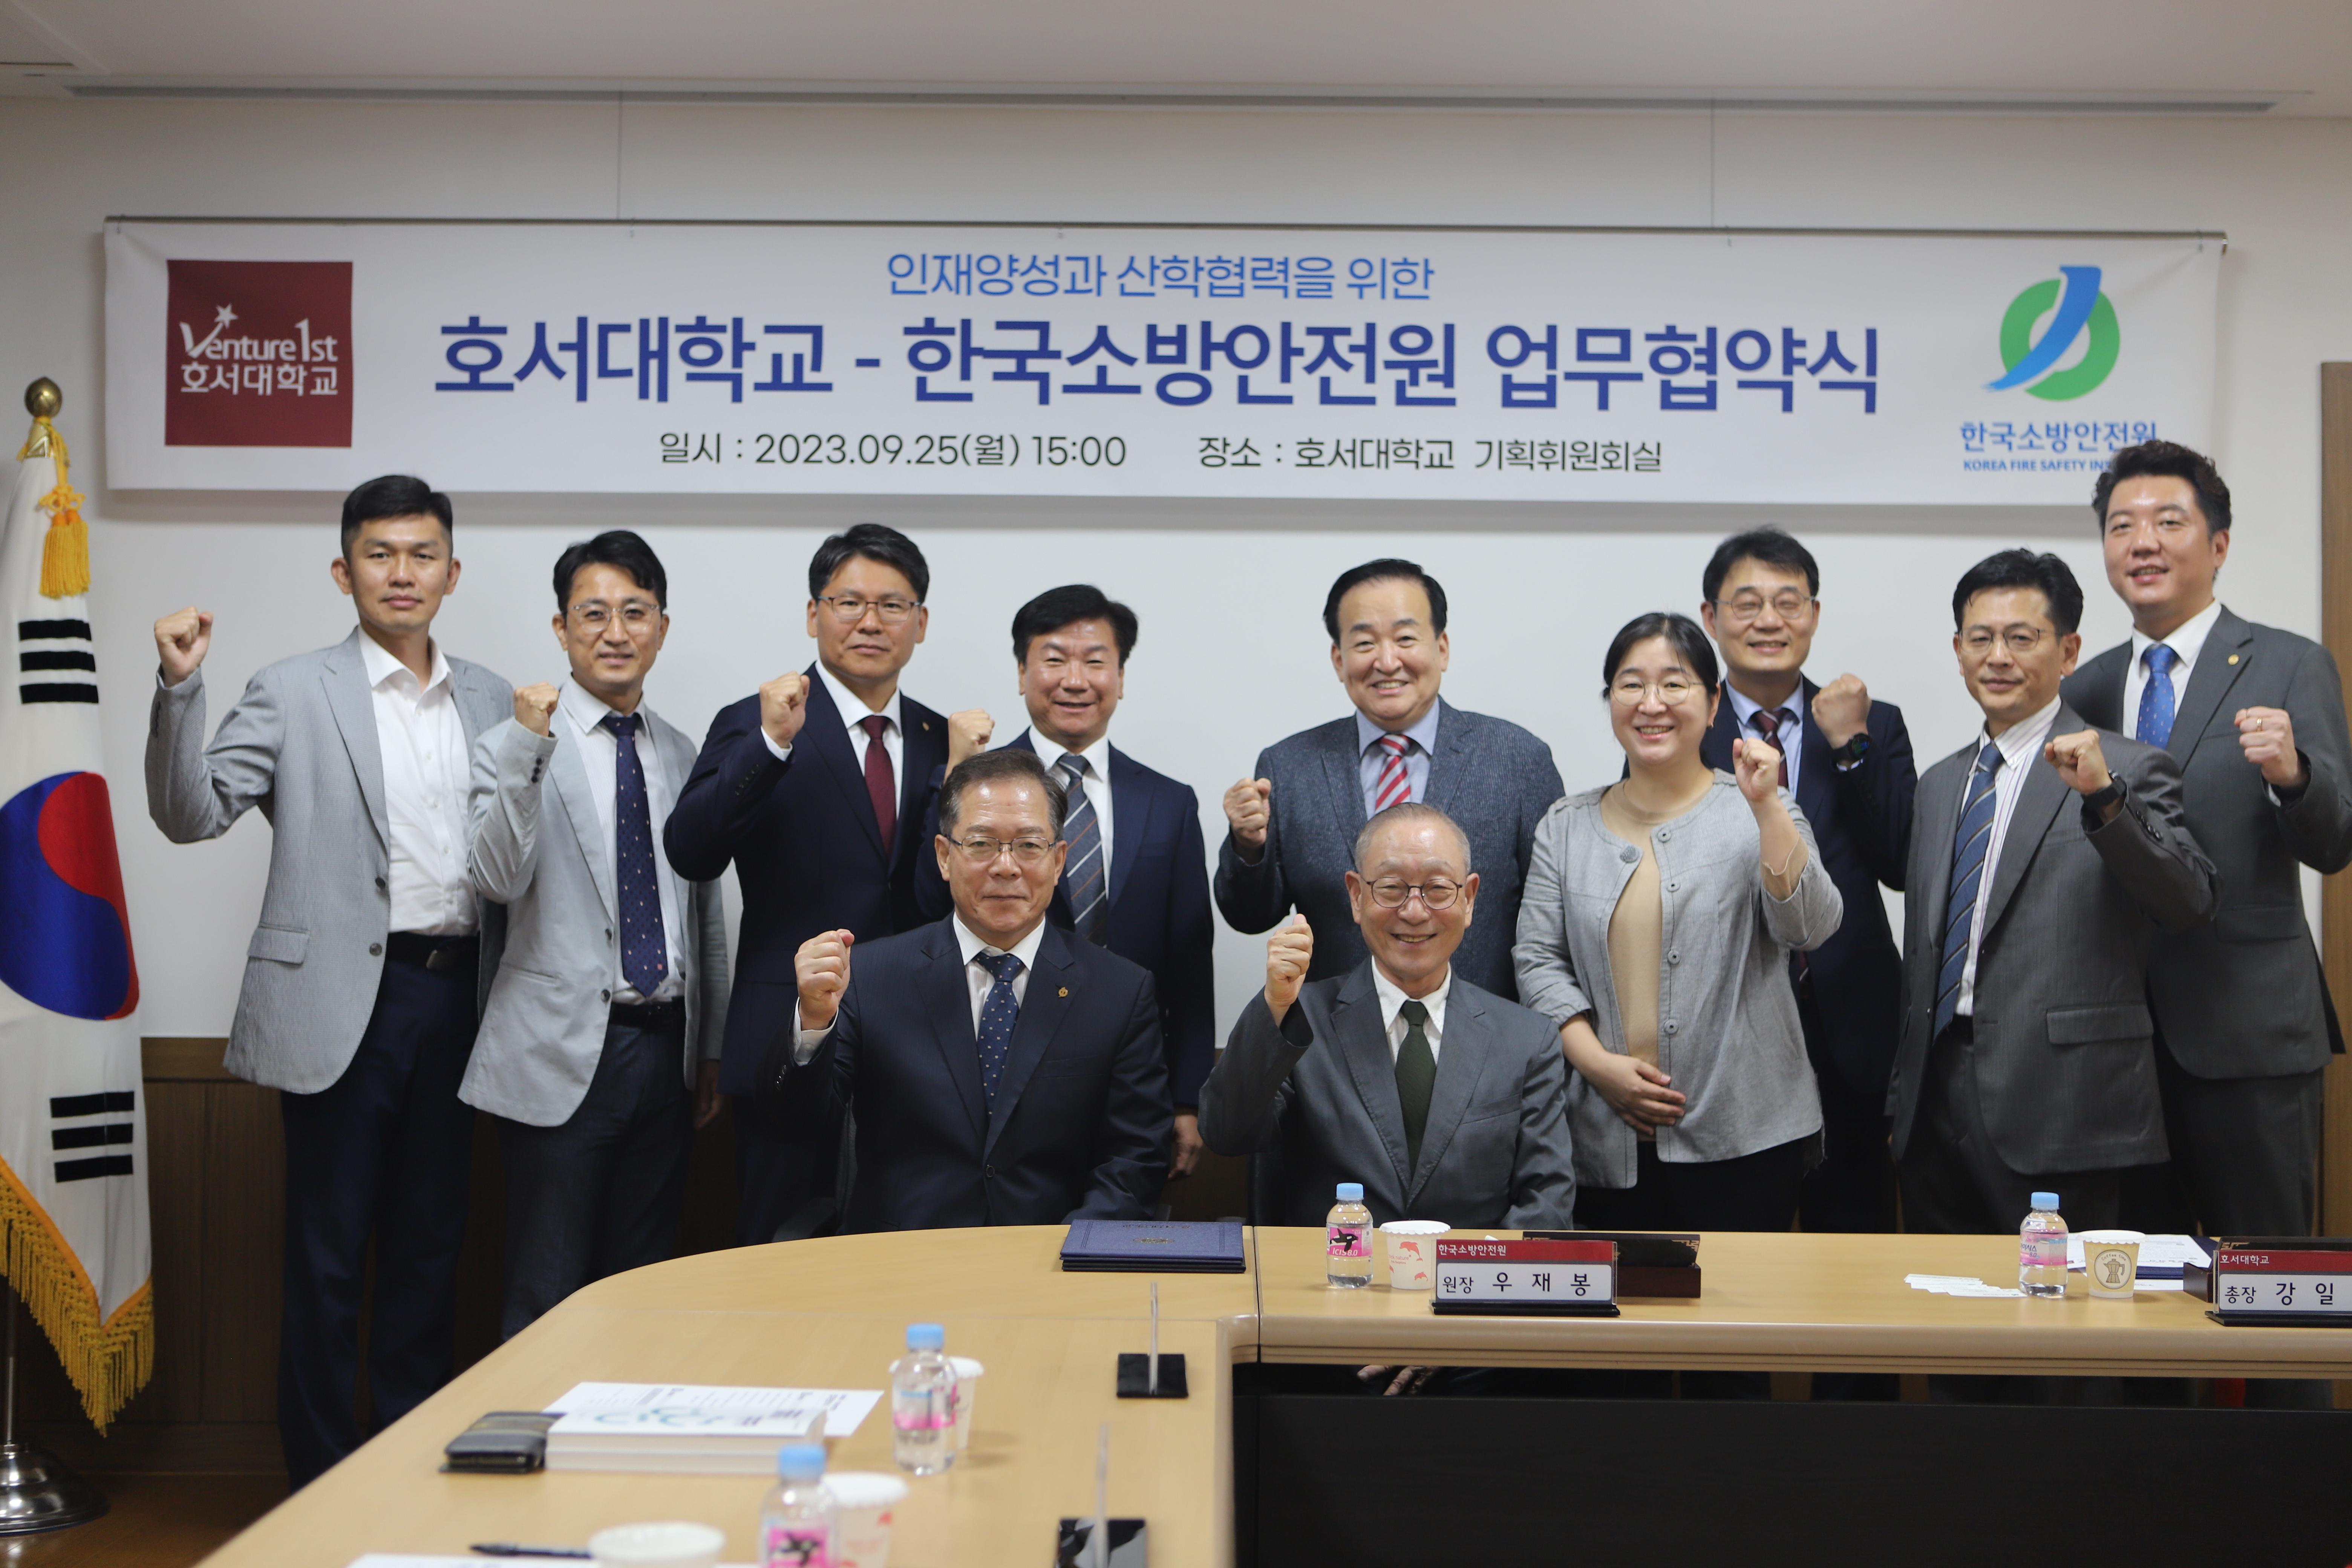 [언로보도] 호서대학교와 한국소방안전원 산학협력을 위한 업무협약